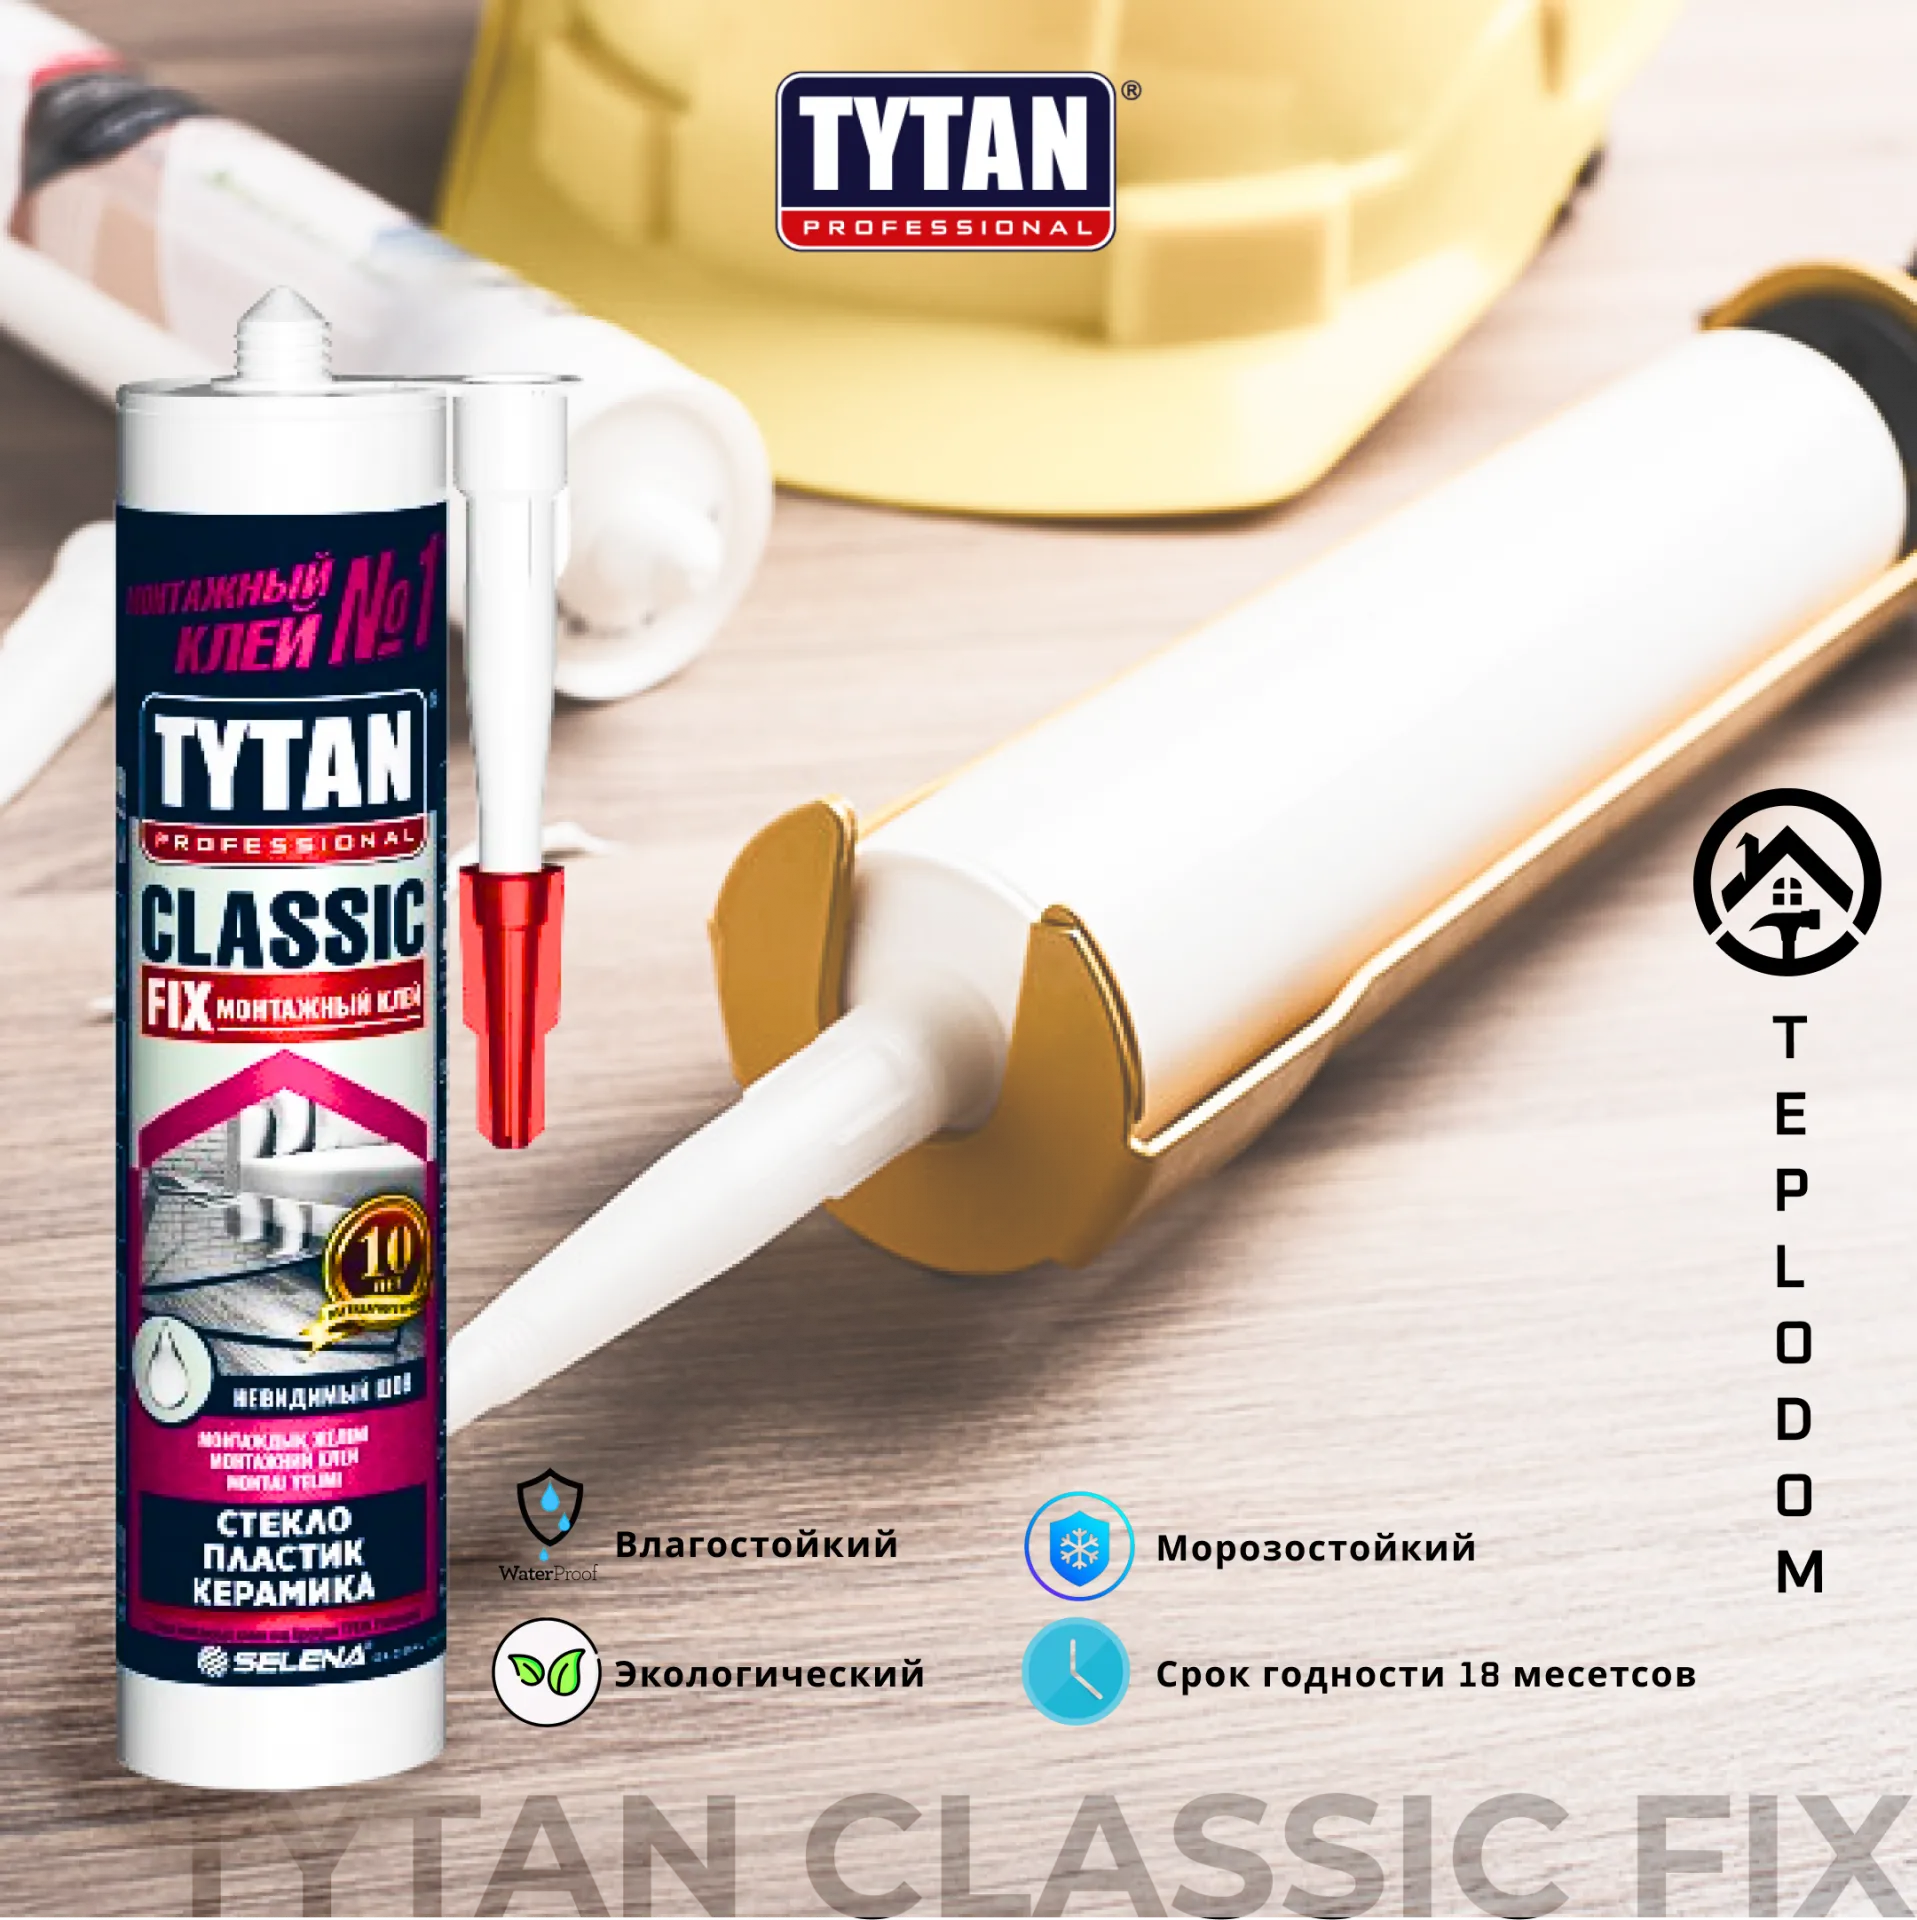 Монтажный клей Tytan Classic FIX#1